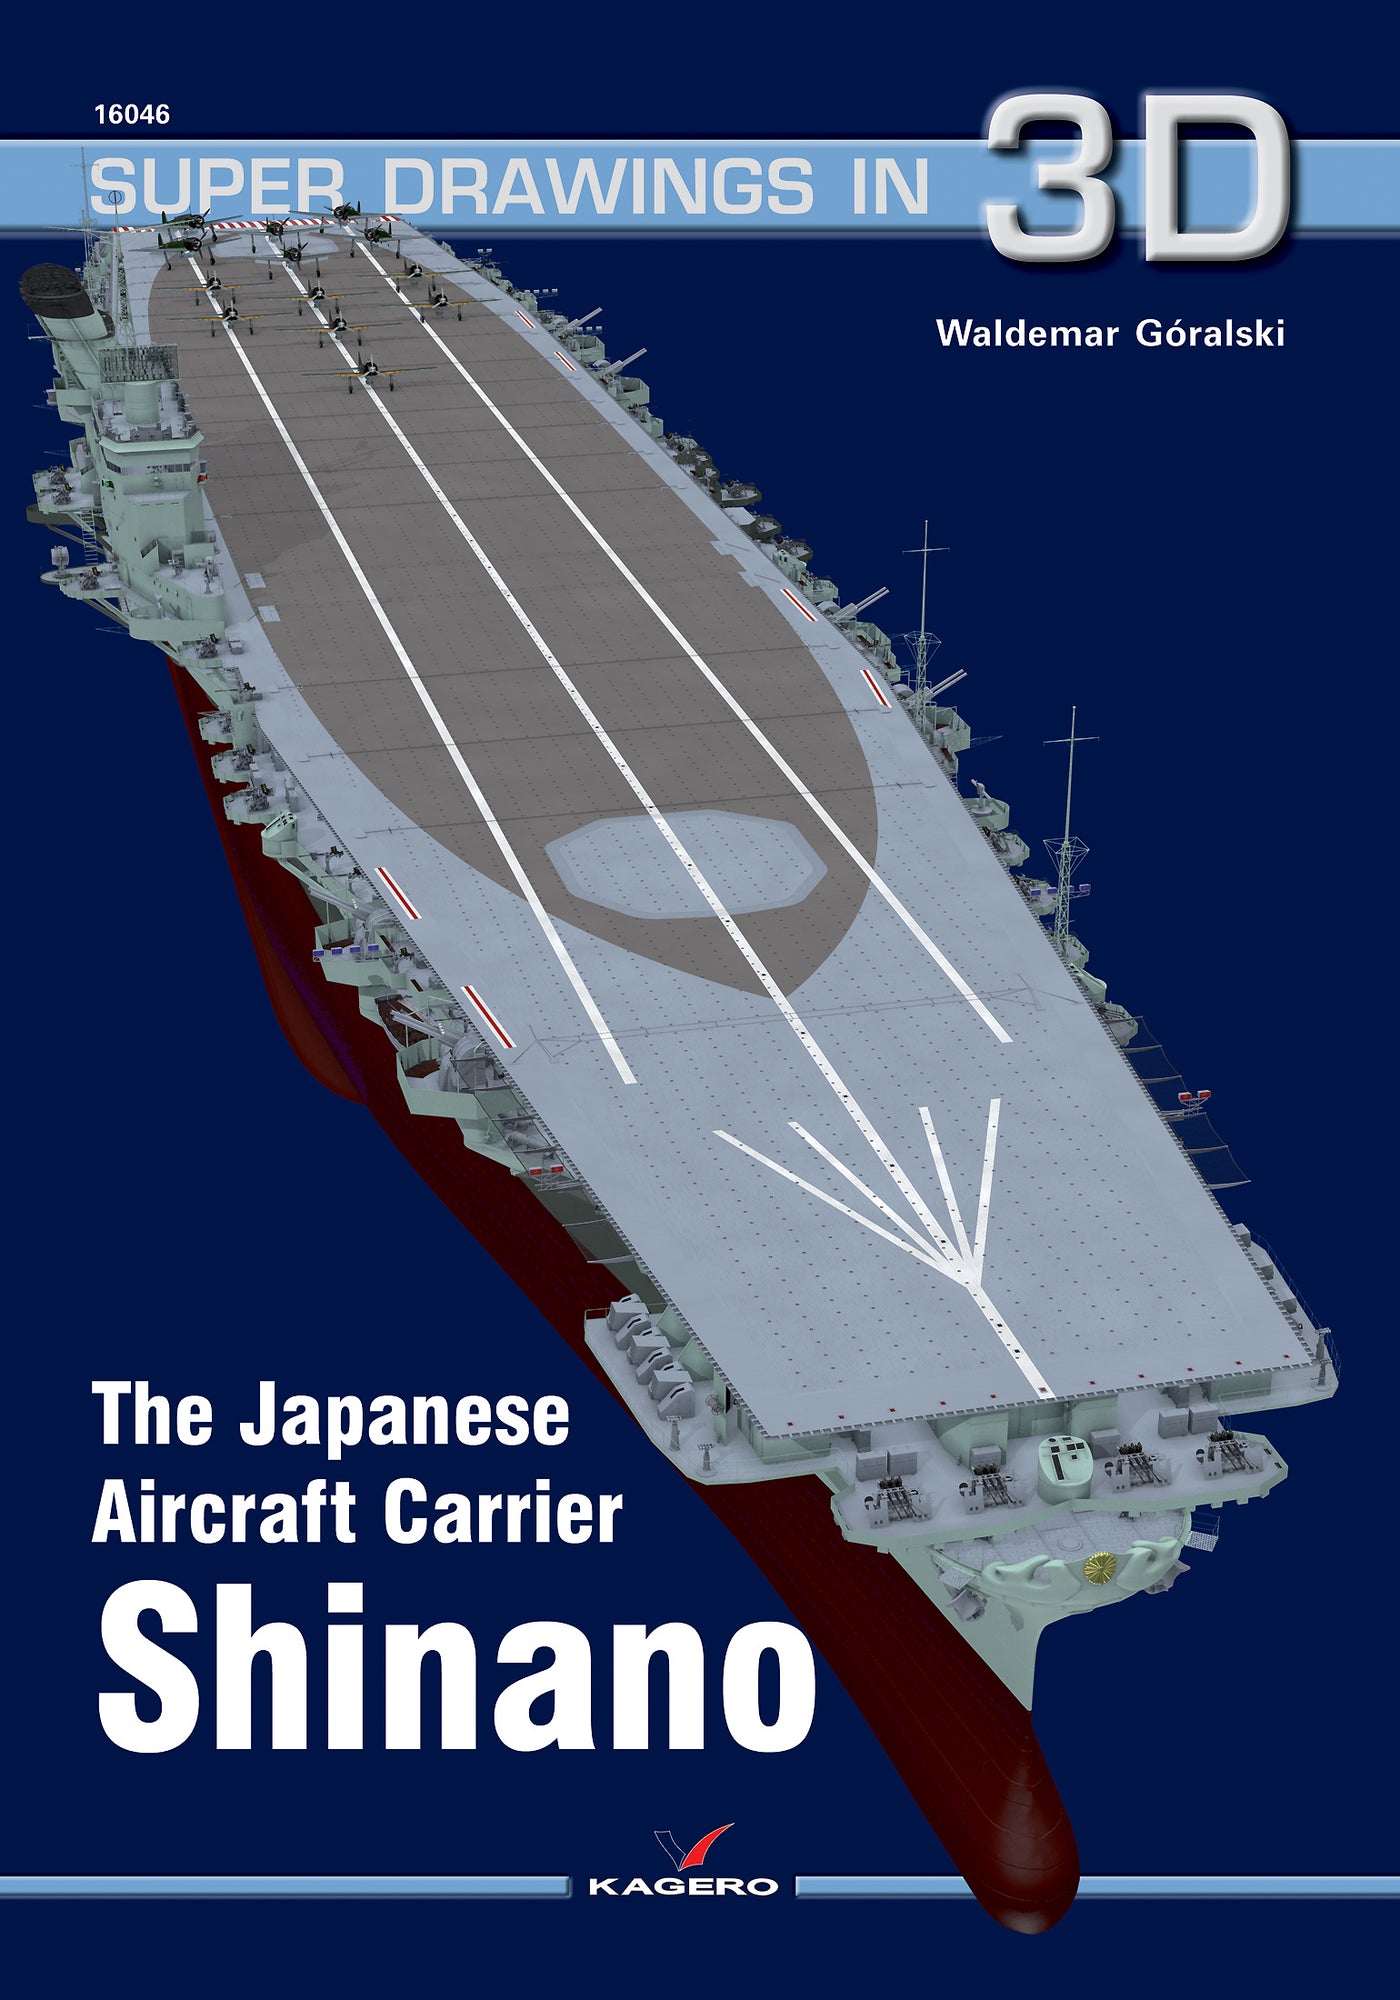 Der japanische Träger Shinano 